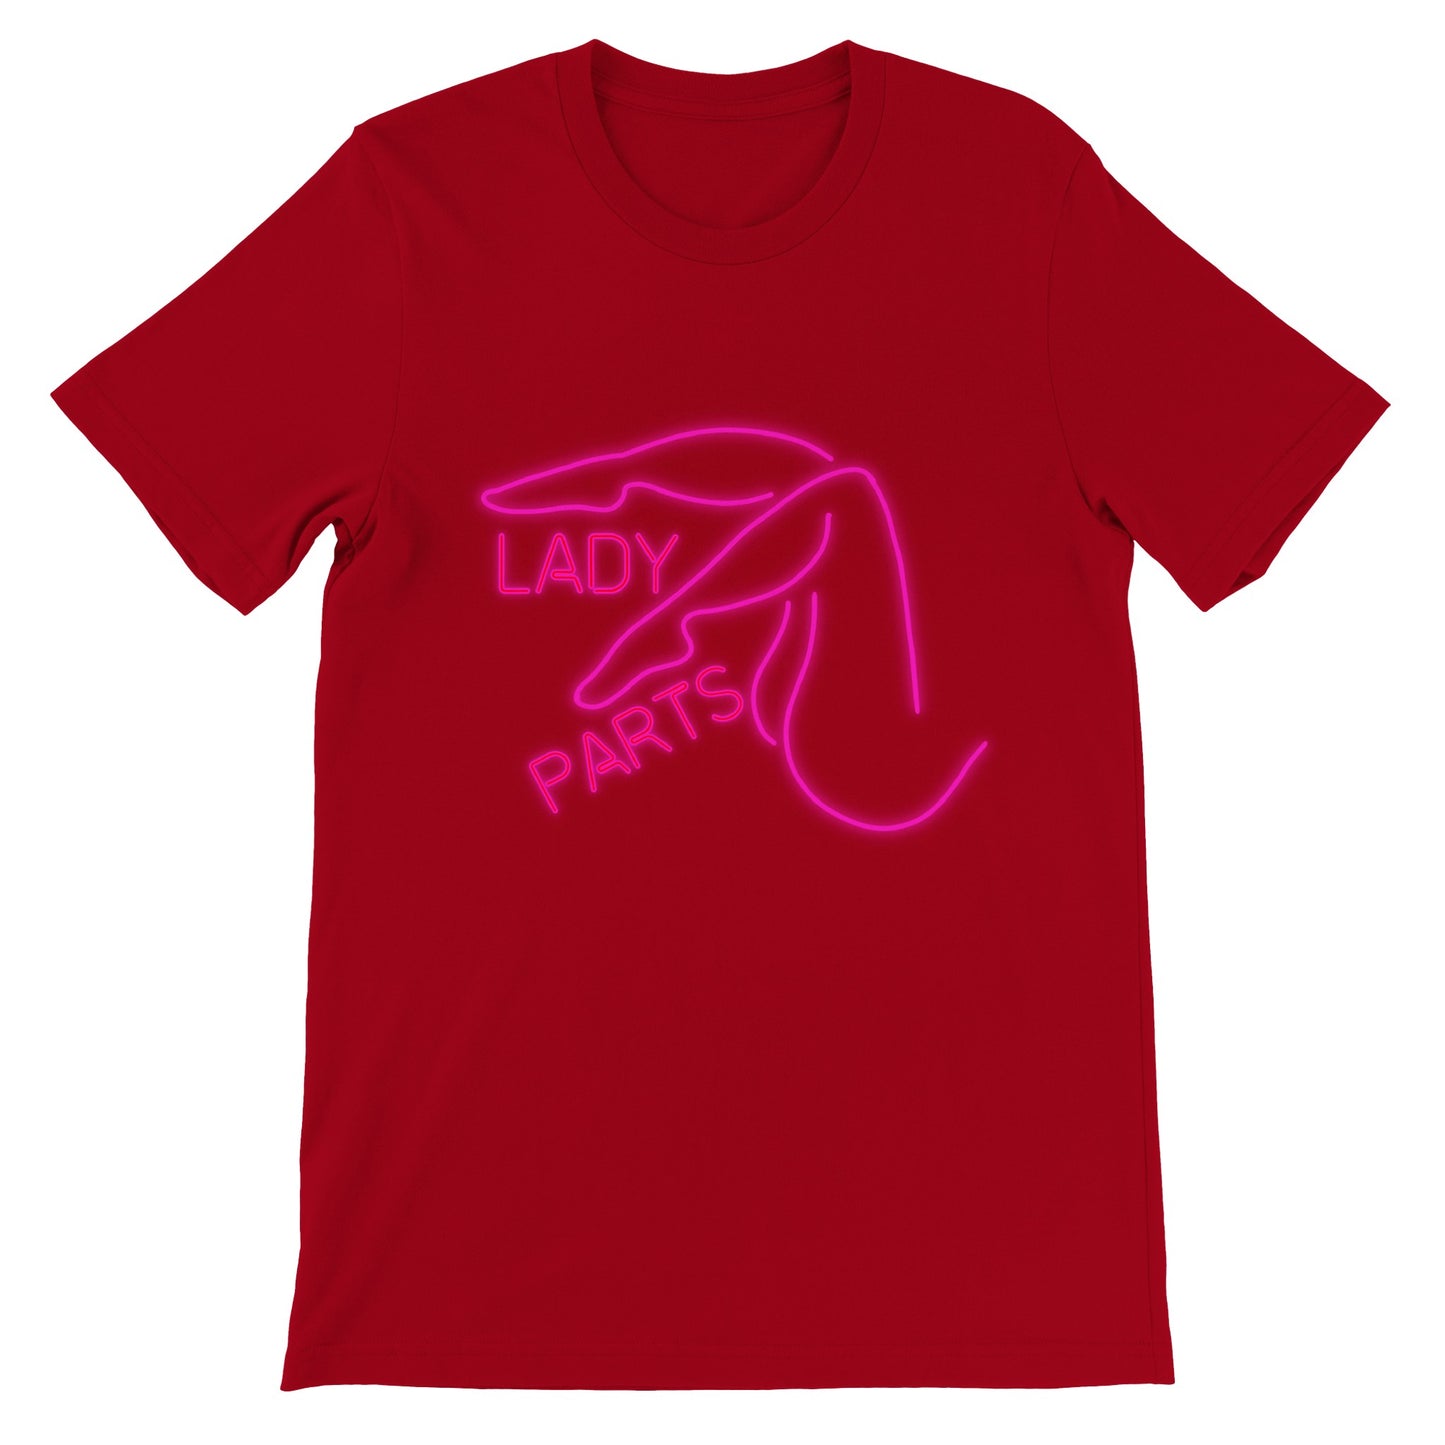 LOVE LAROUGE Premium "LADY PARTS" Unisex Crewneck T-shirt